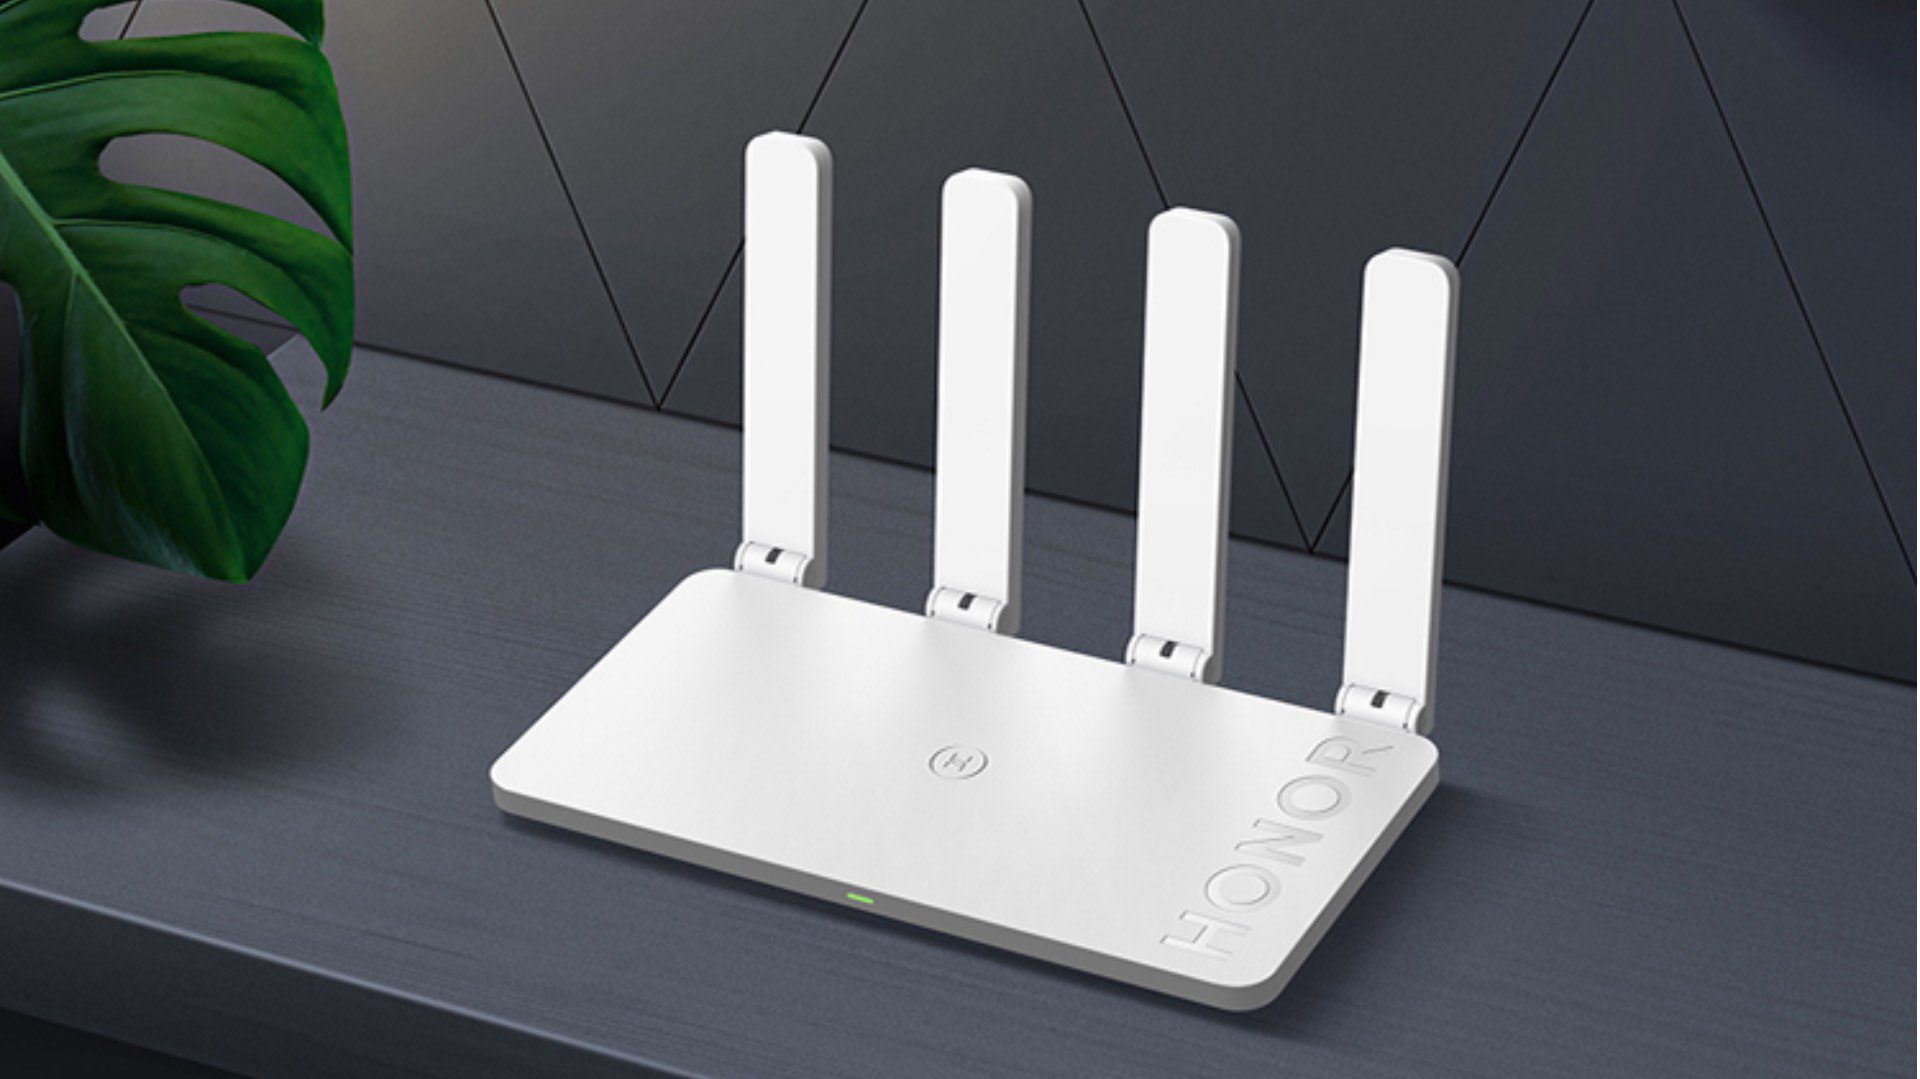 honor router x3 pro wi-fi gigabit prezzo